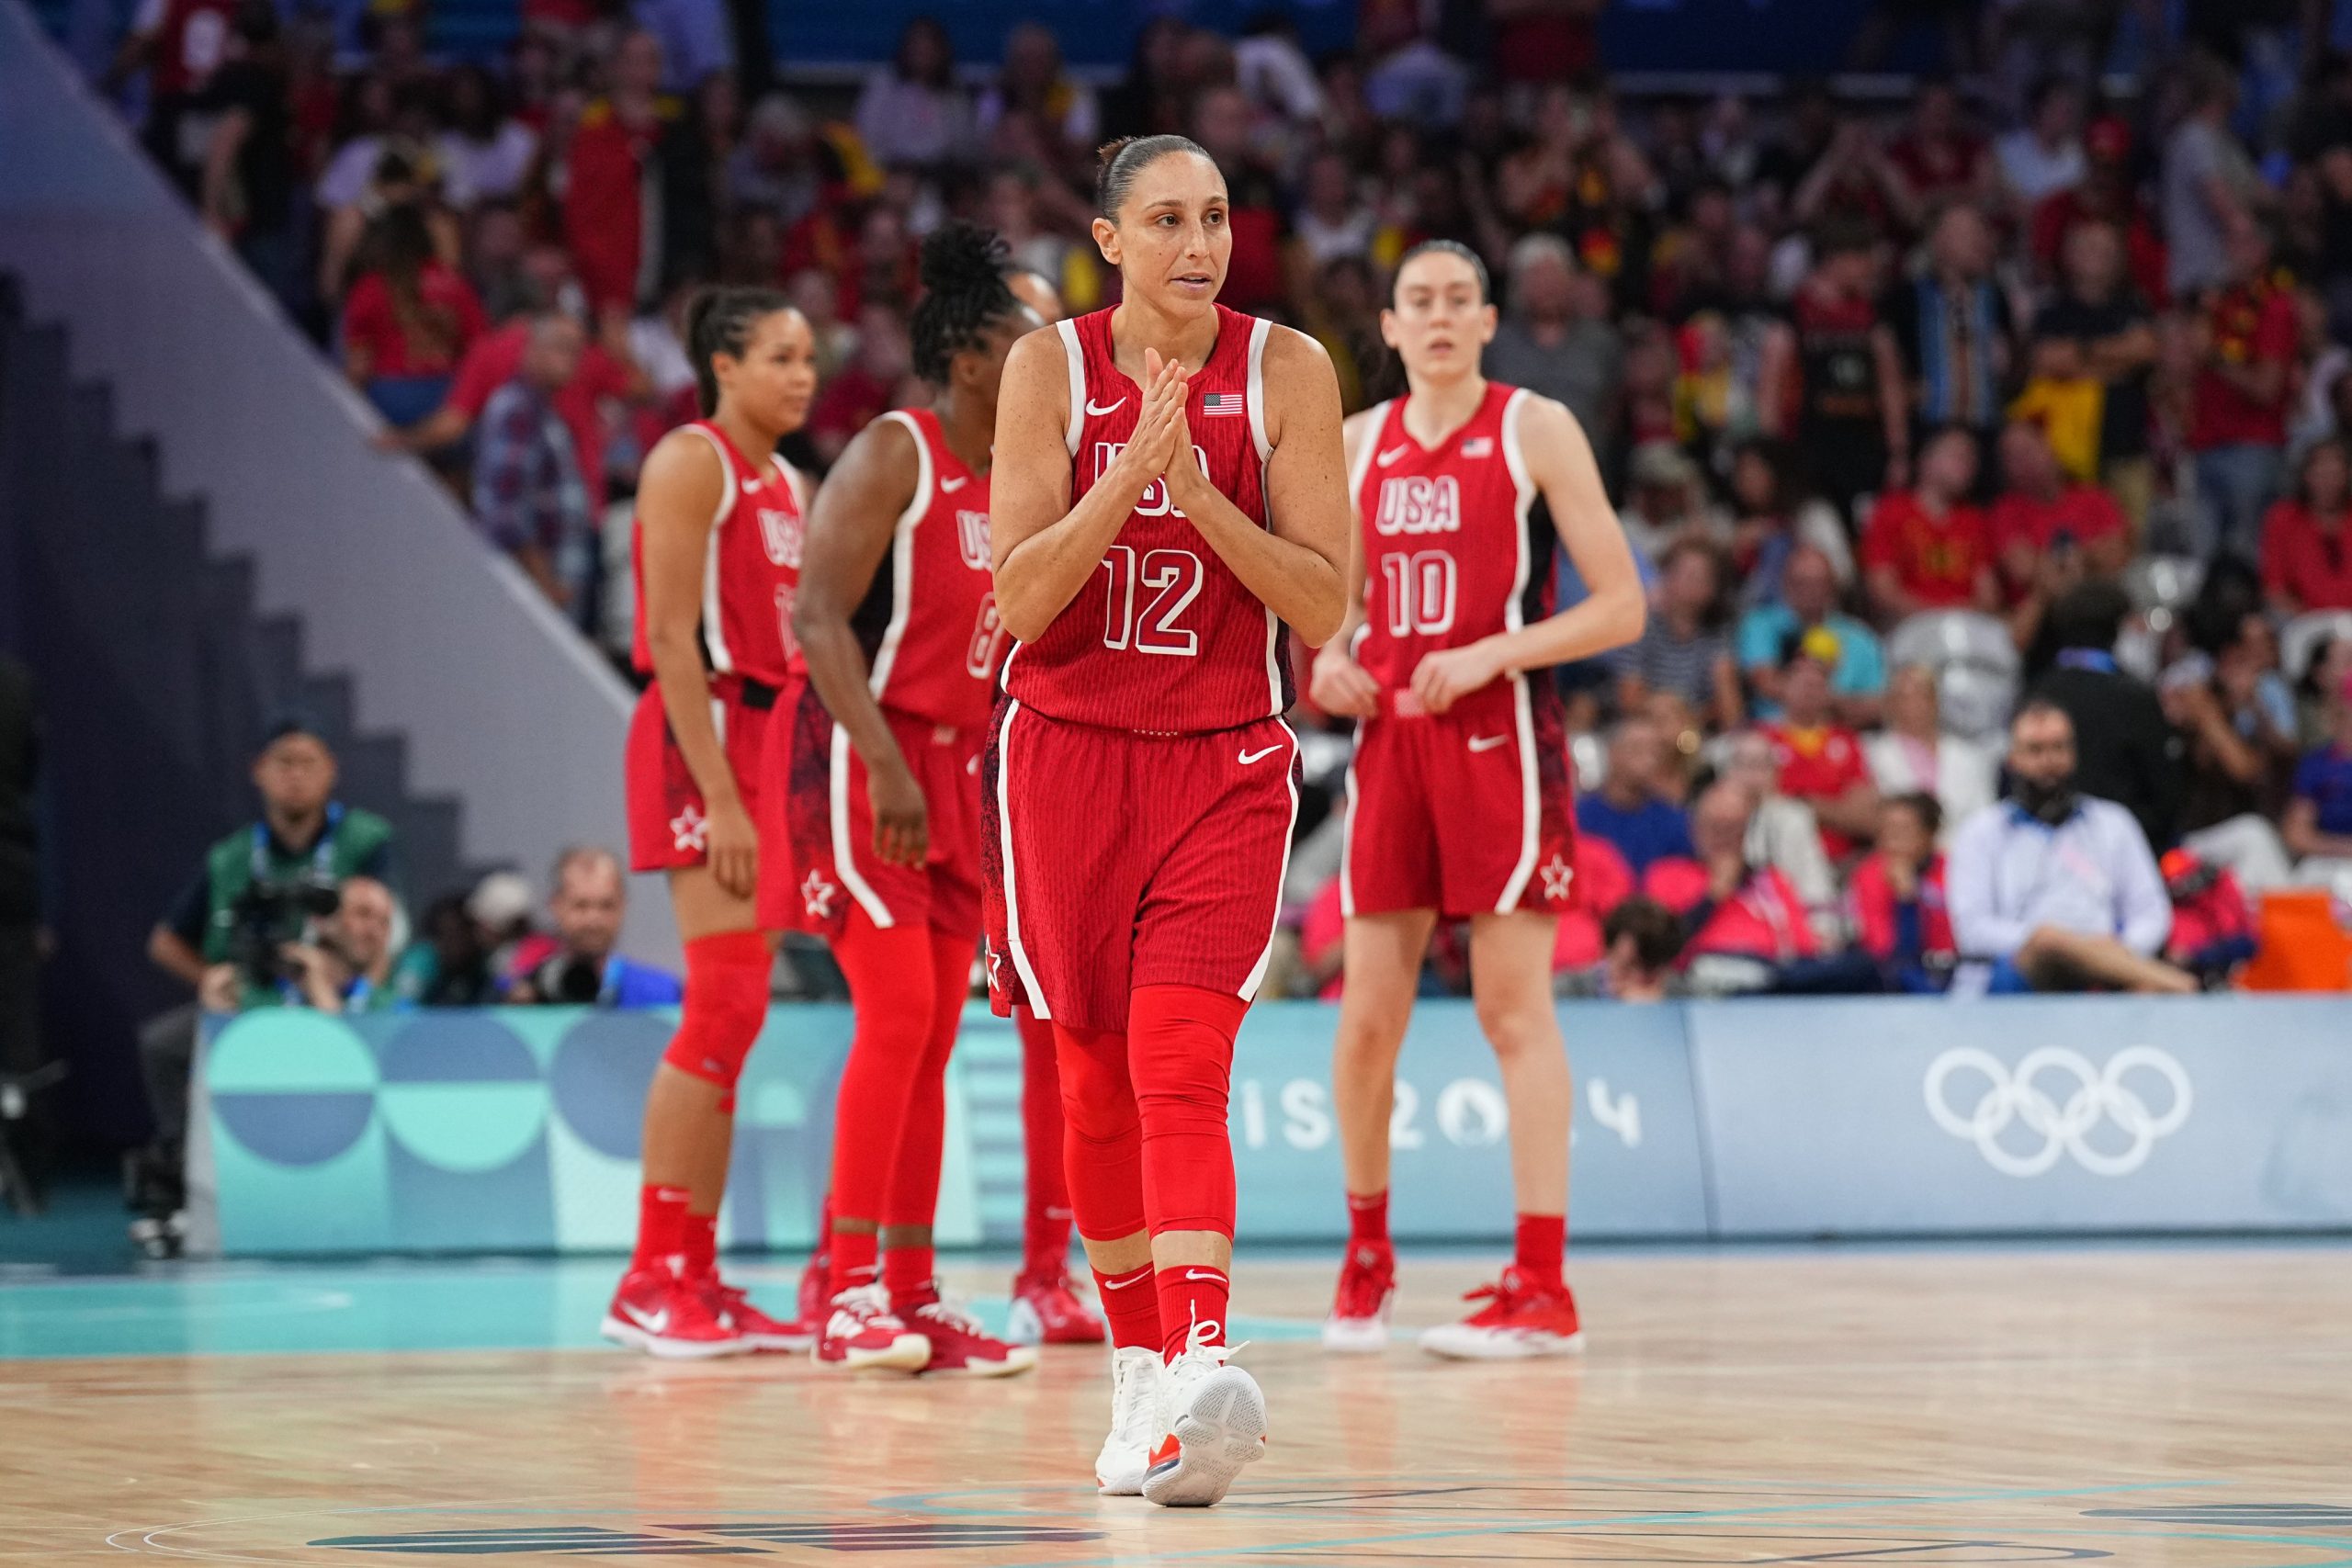 EUA venceu a Bélgica no basquete feminino (Foto: Divulgação/USA Basketball)